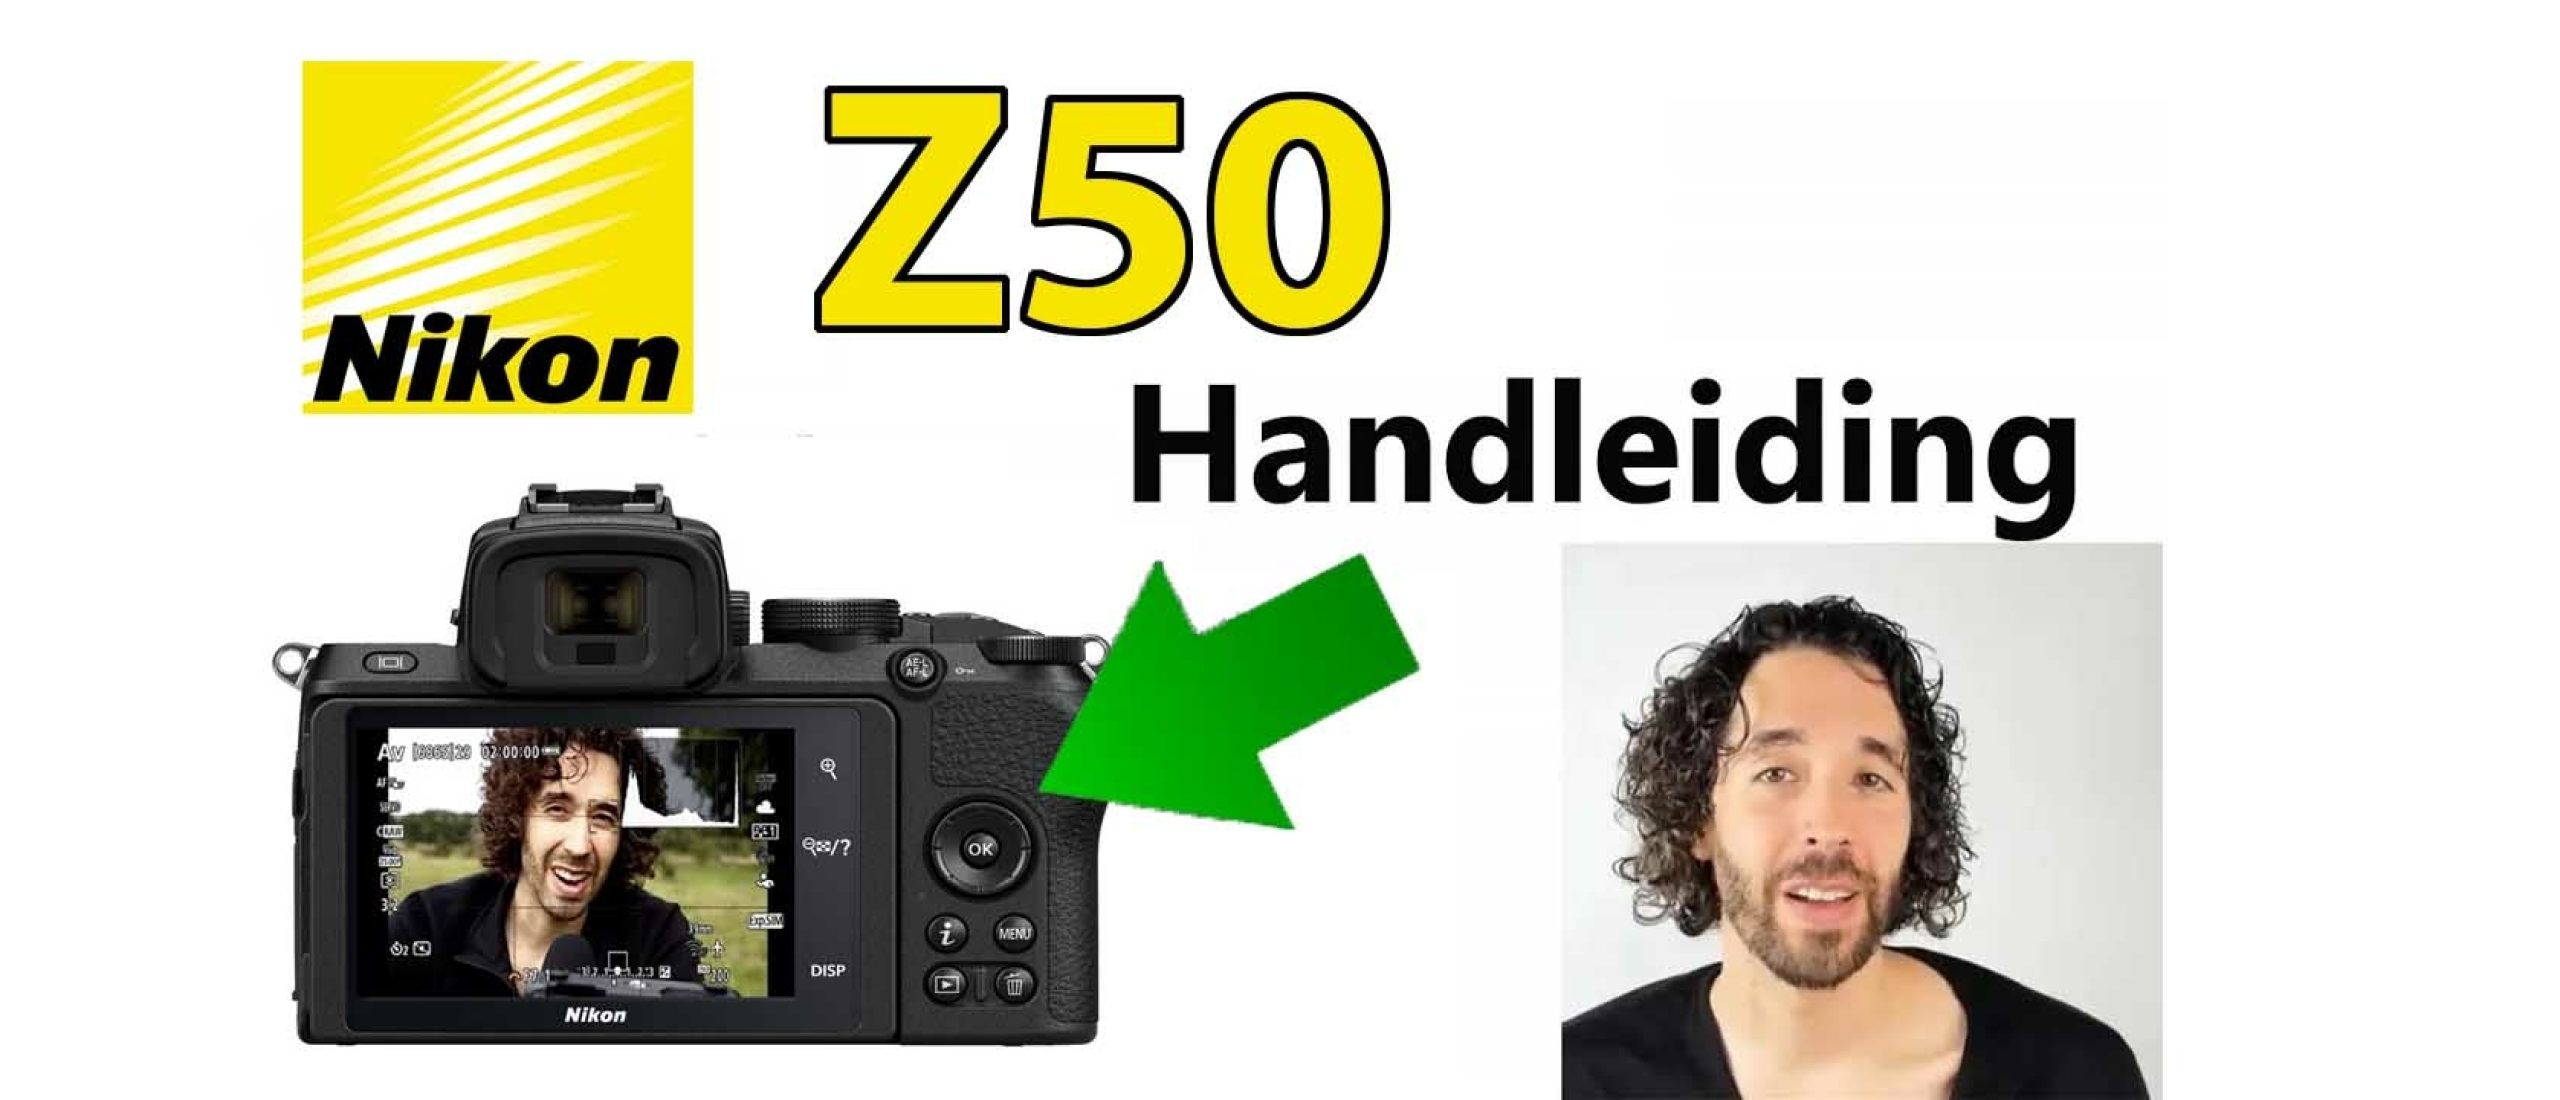 Nikon Z50 Handleiding Video: Menu, Functies, Knoppen & Instellingen uitgelegd